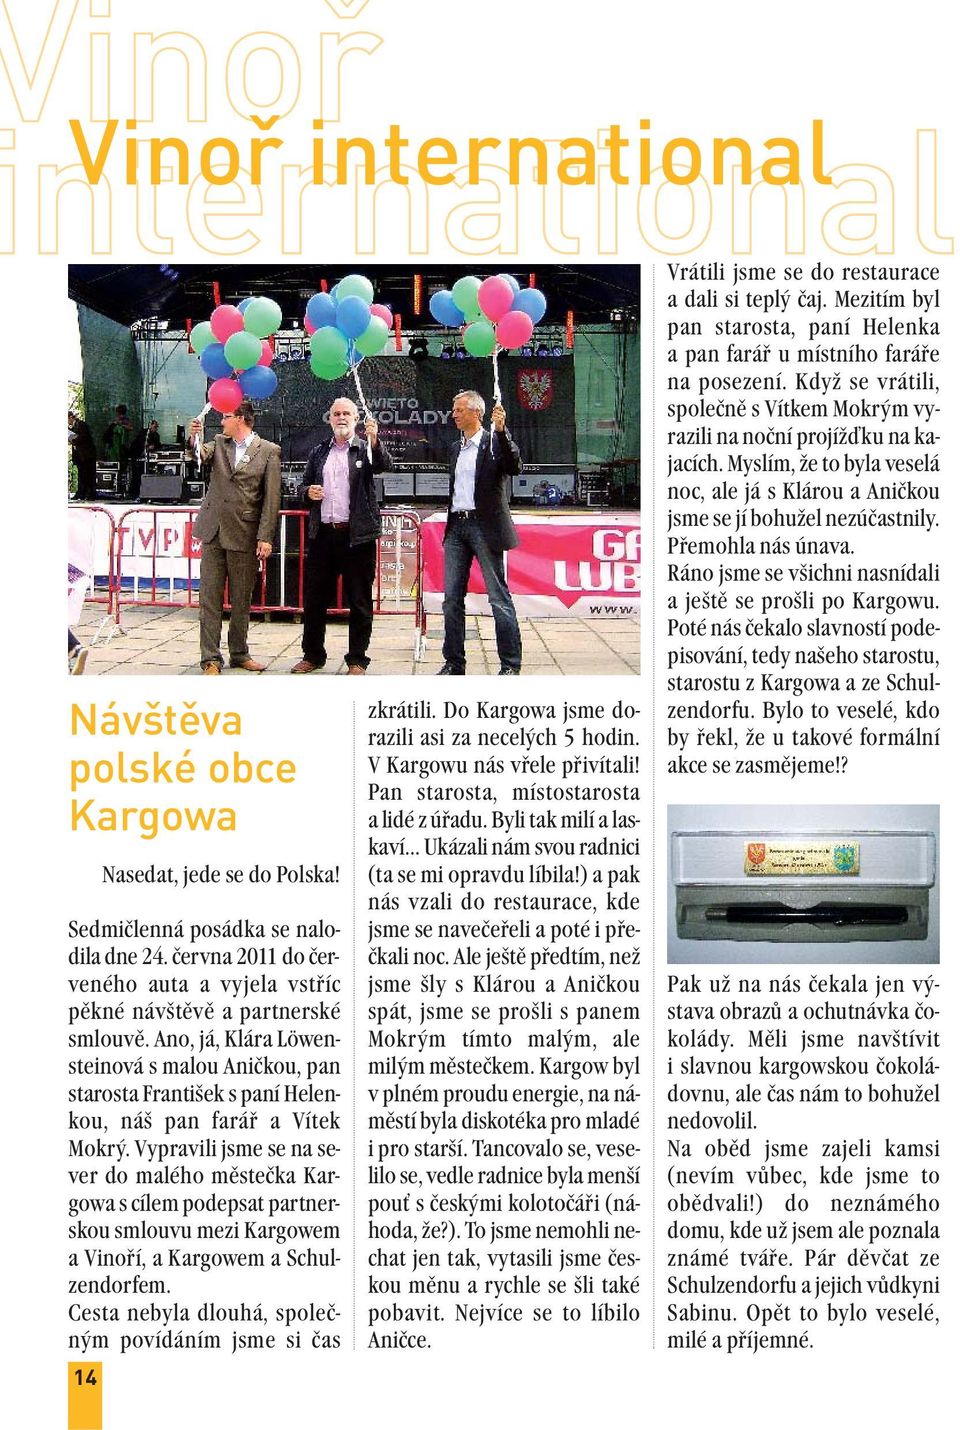 Vypravili jsme se na sever do malého městečka Kargowa s cílem podepsat partnerskou smlouvu mezi Kargowem a Vinoří, a Kargowem a Schulzendorfem.